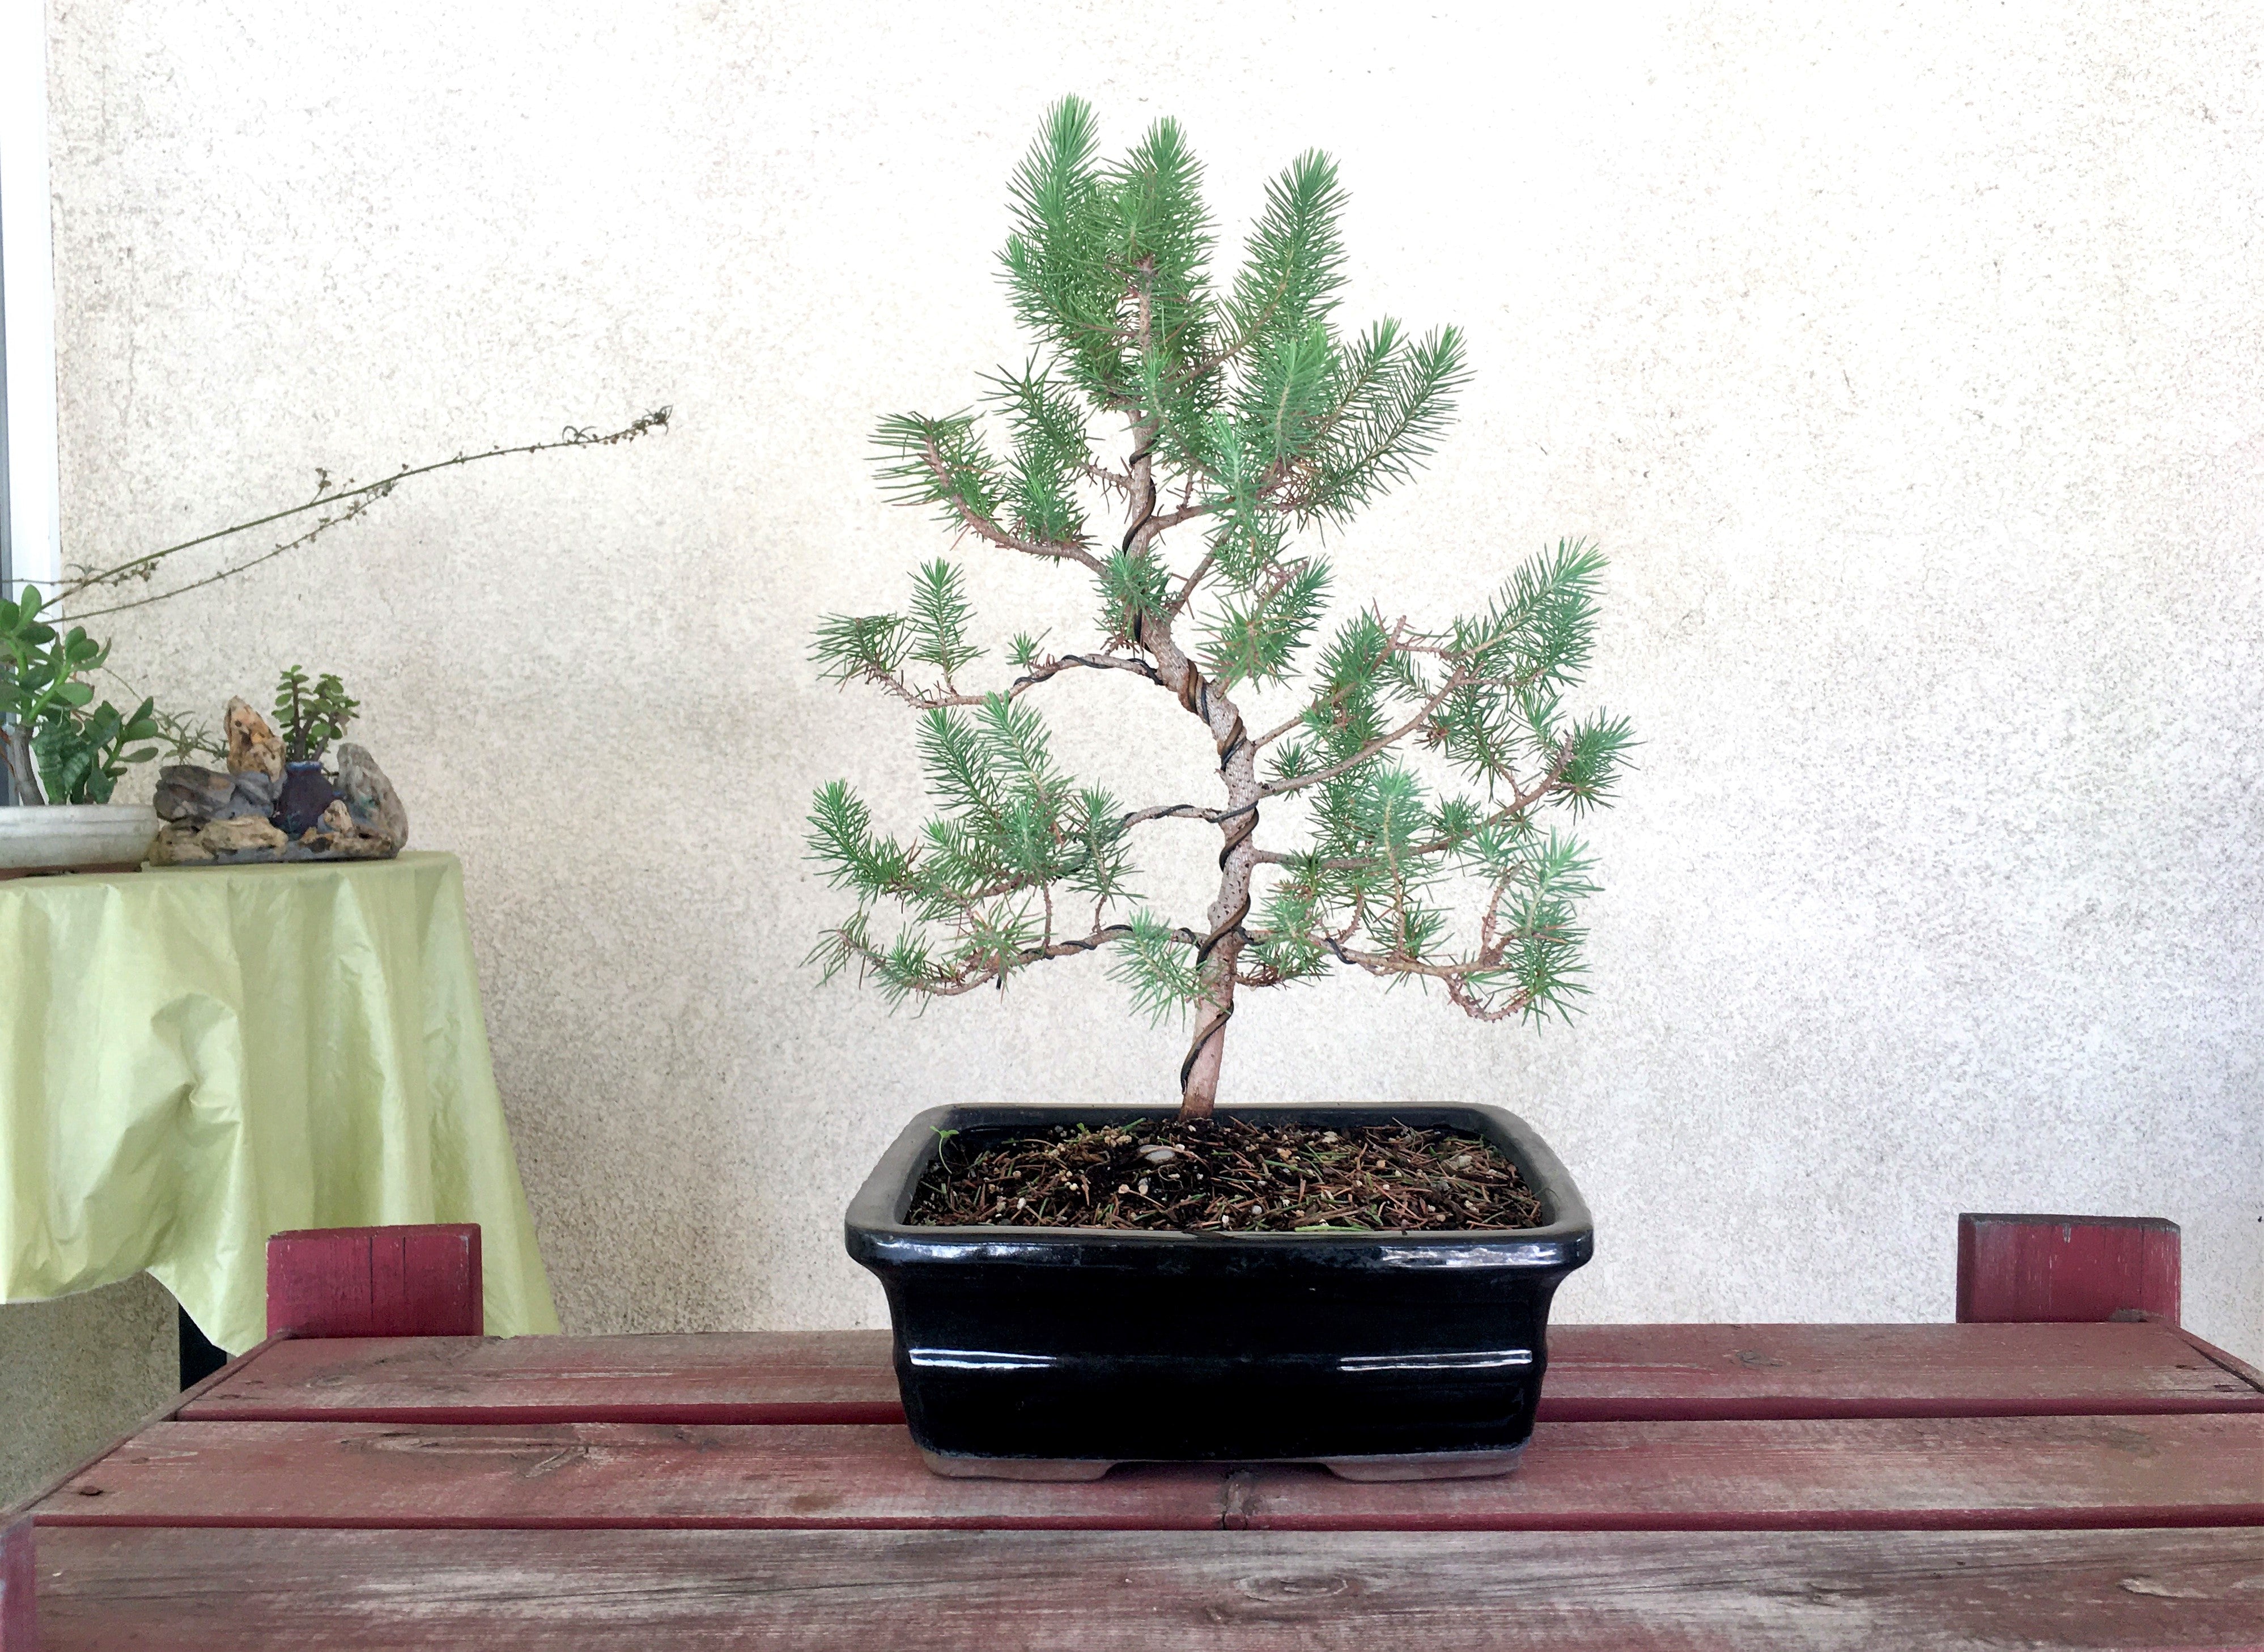 Rock Pine Bonsai Tree (XL)